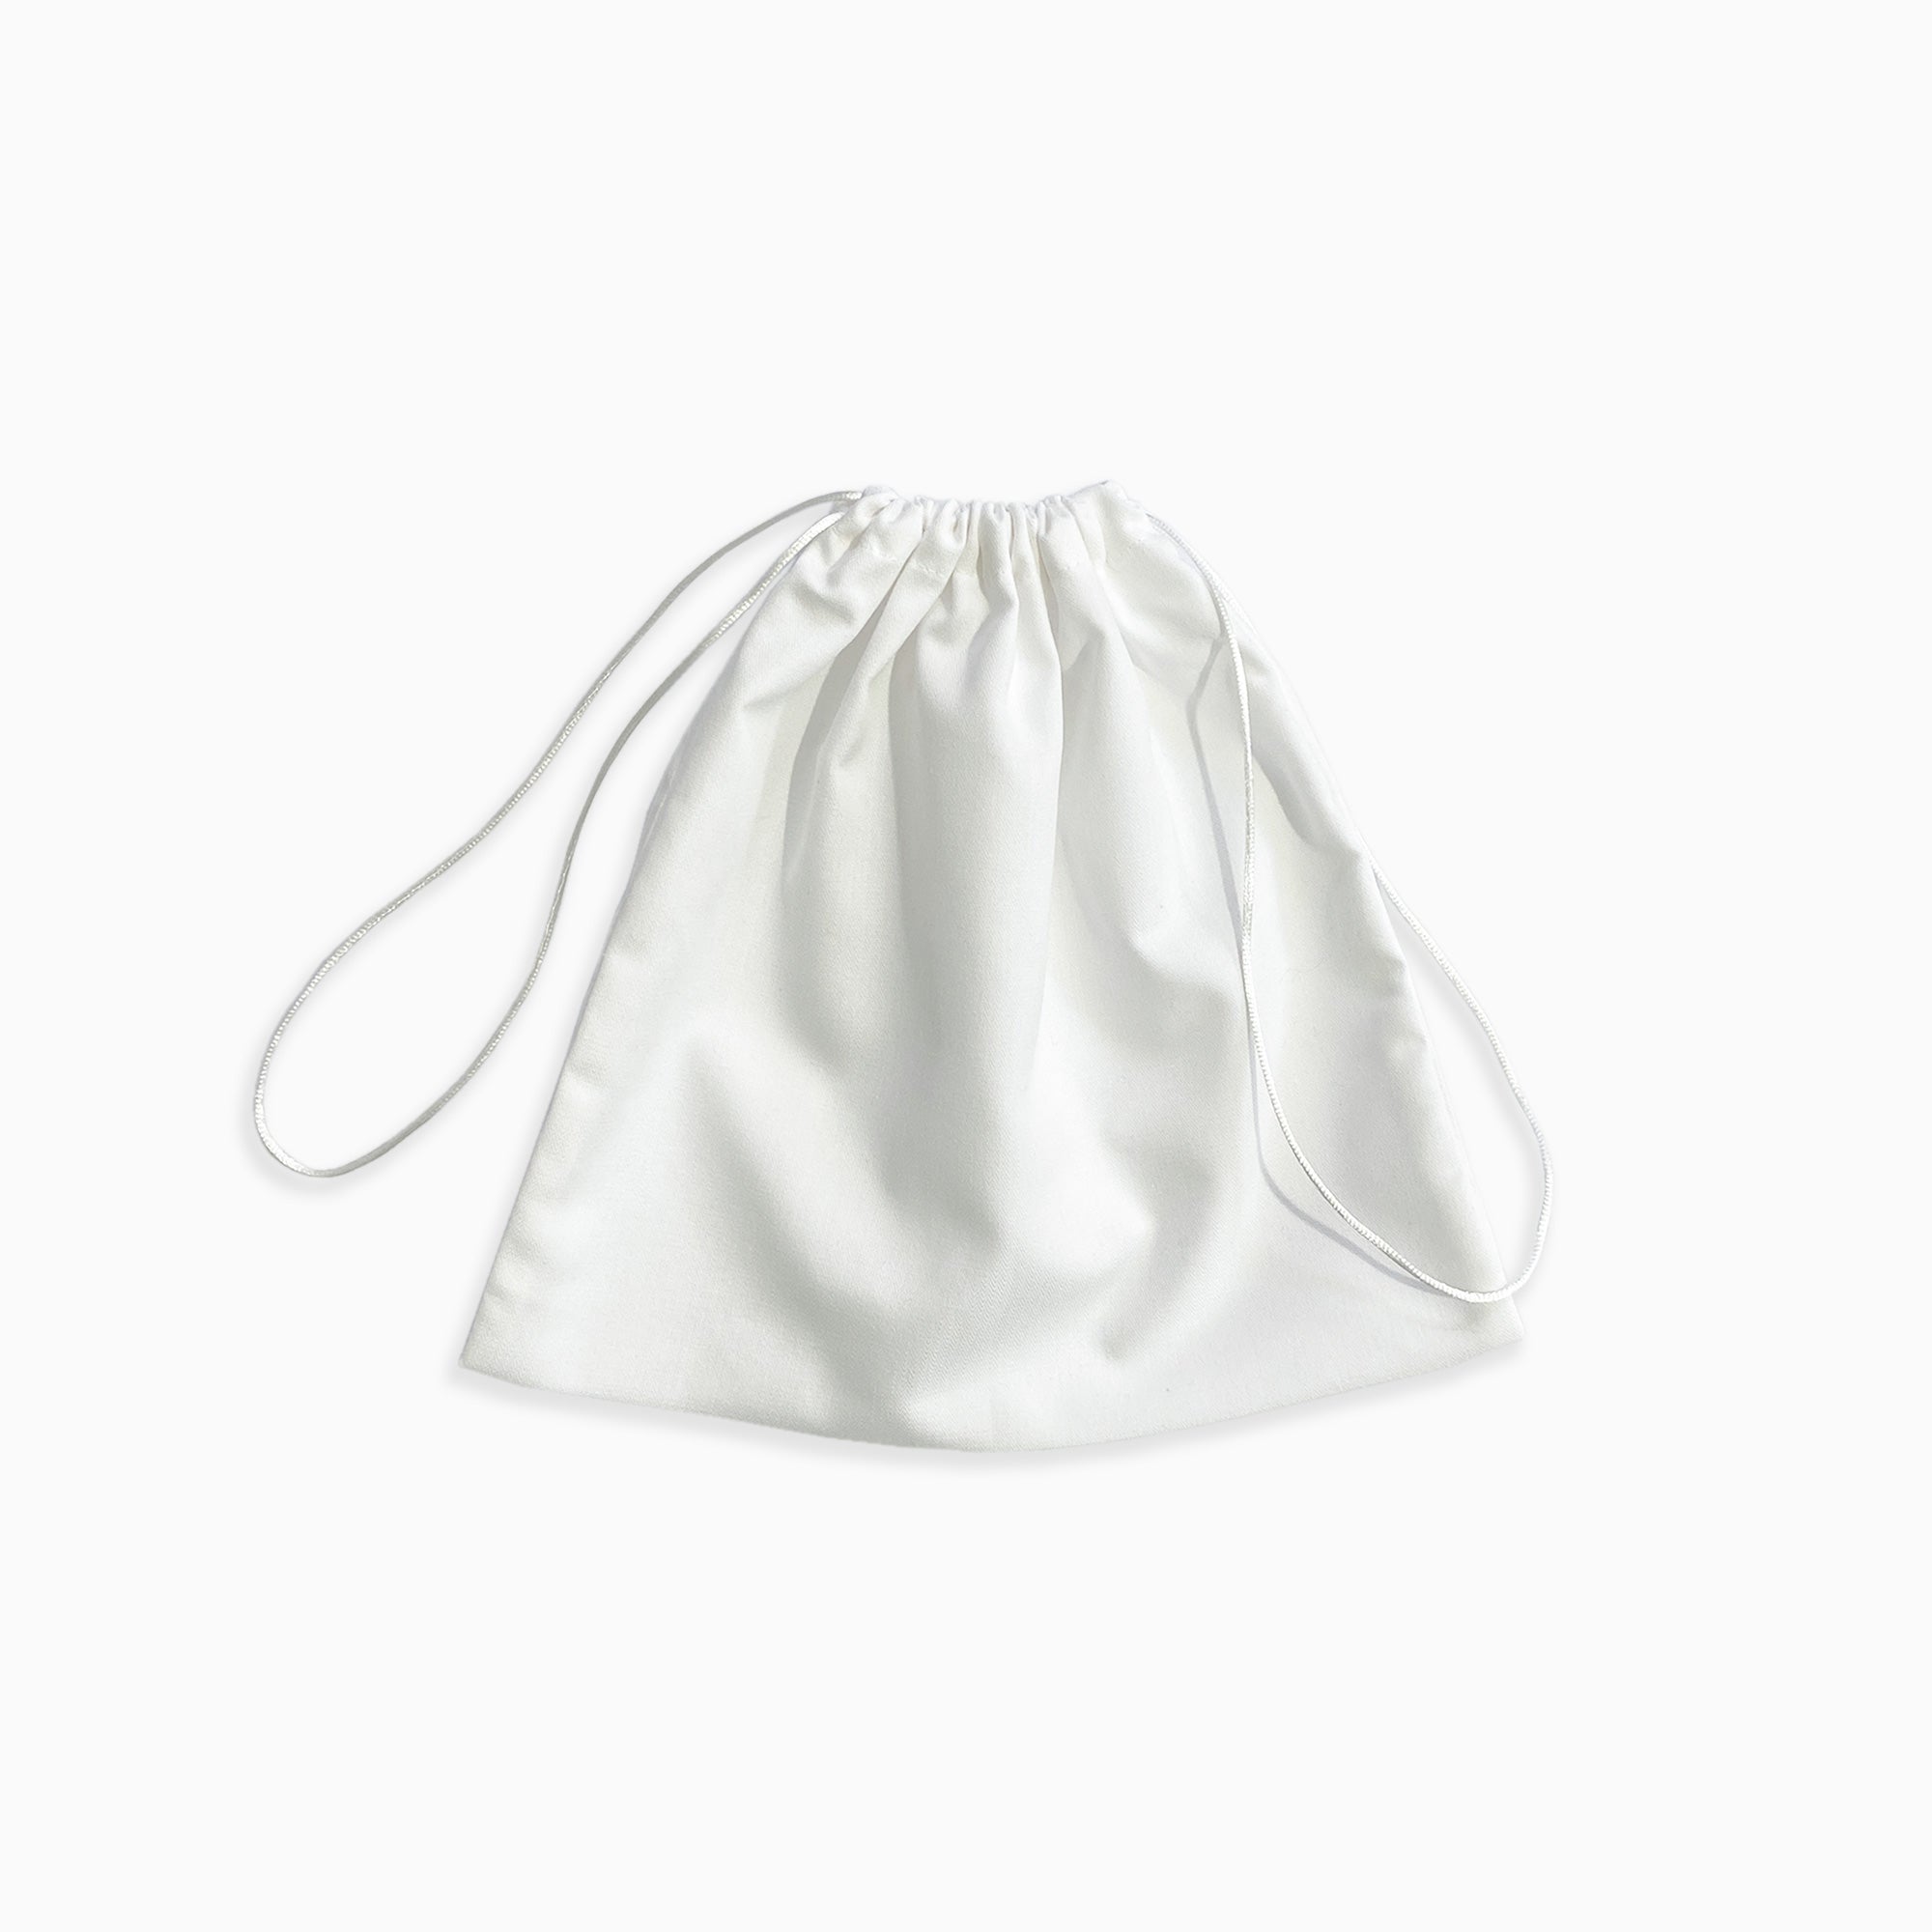 http://mydustbag.com/cdn/shop/products/MYDUSTBAG-blank-dust-bag-cotton-white-all.jpg?v=1642625934